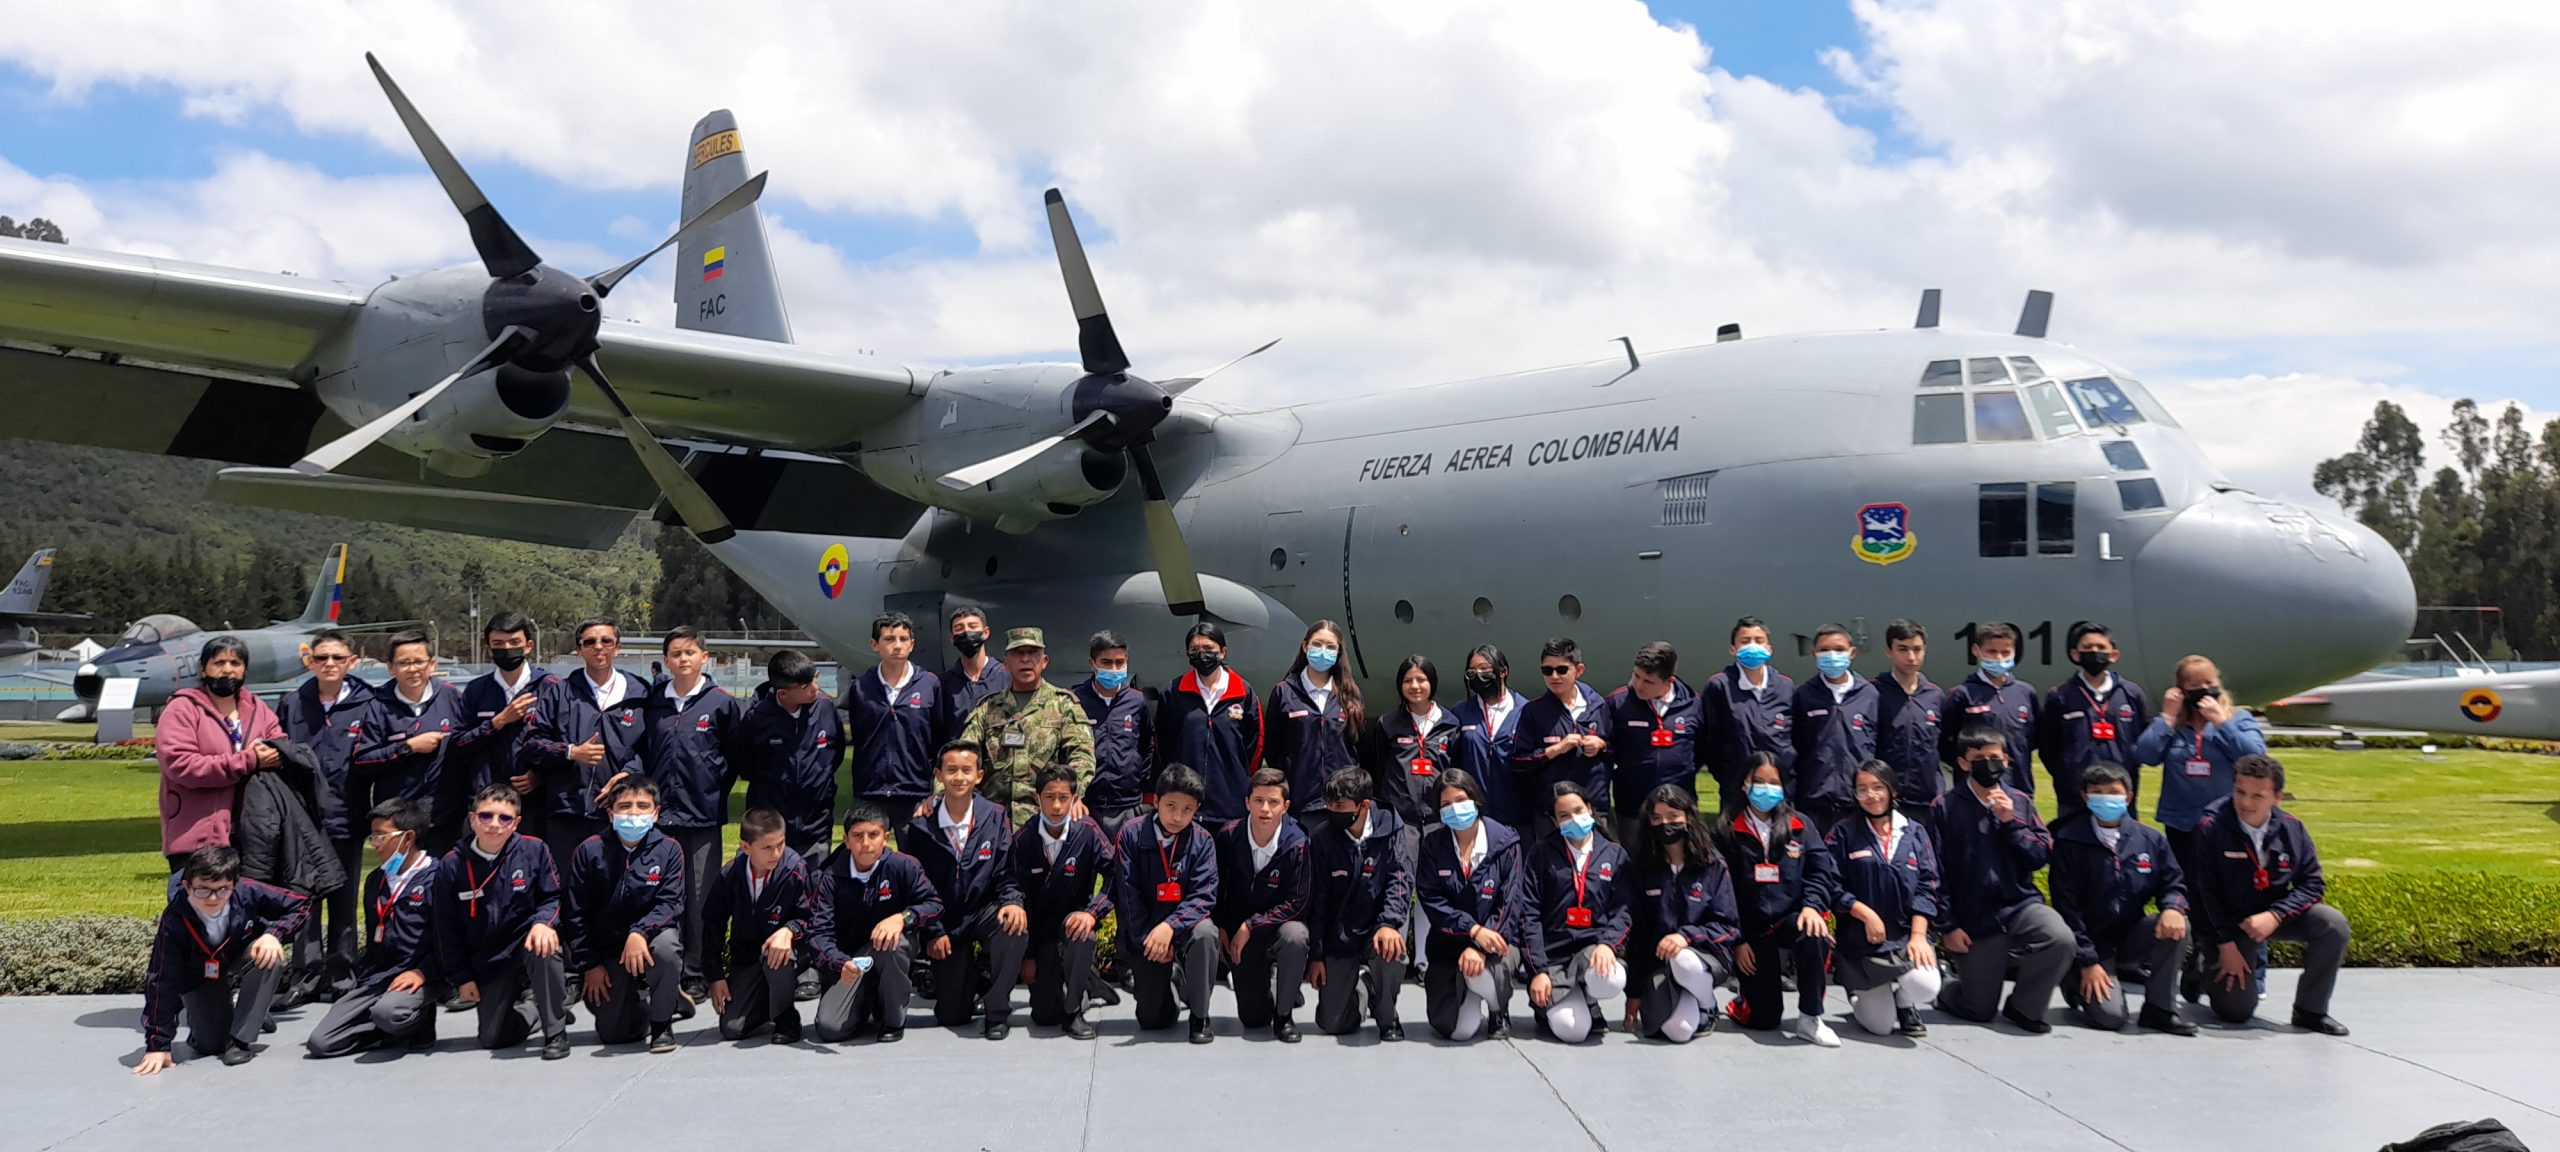 Visita al Museo Aeroespacial de la Fuerza Aérea Colombiana